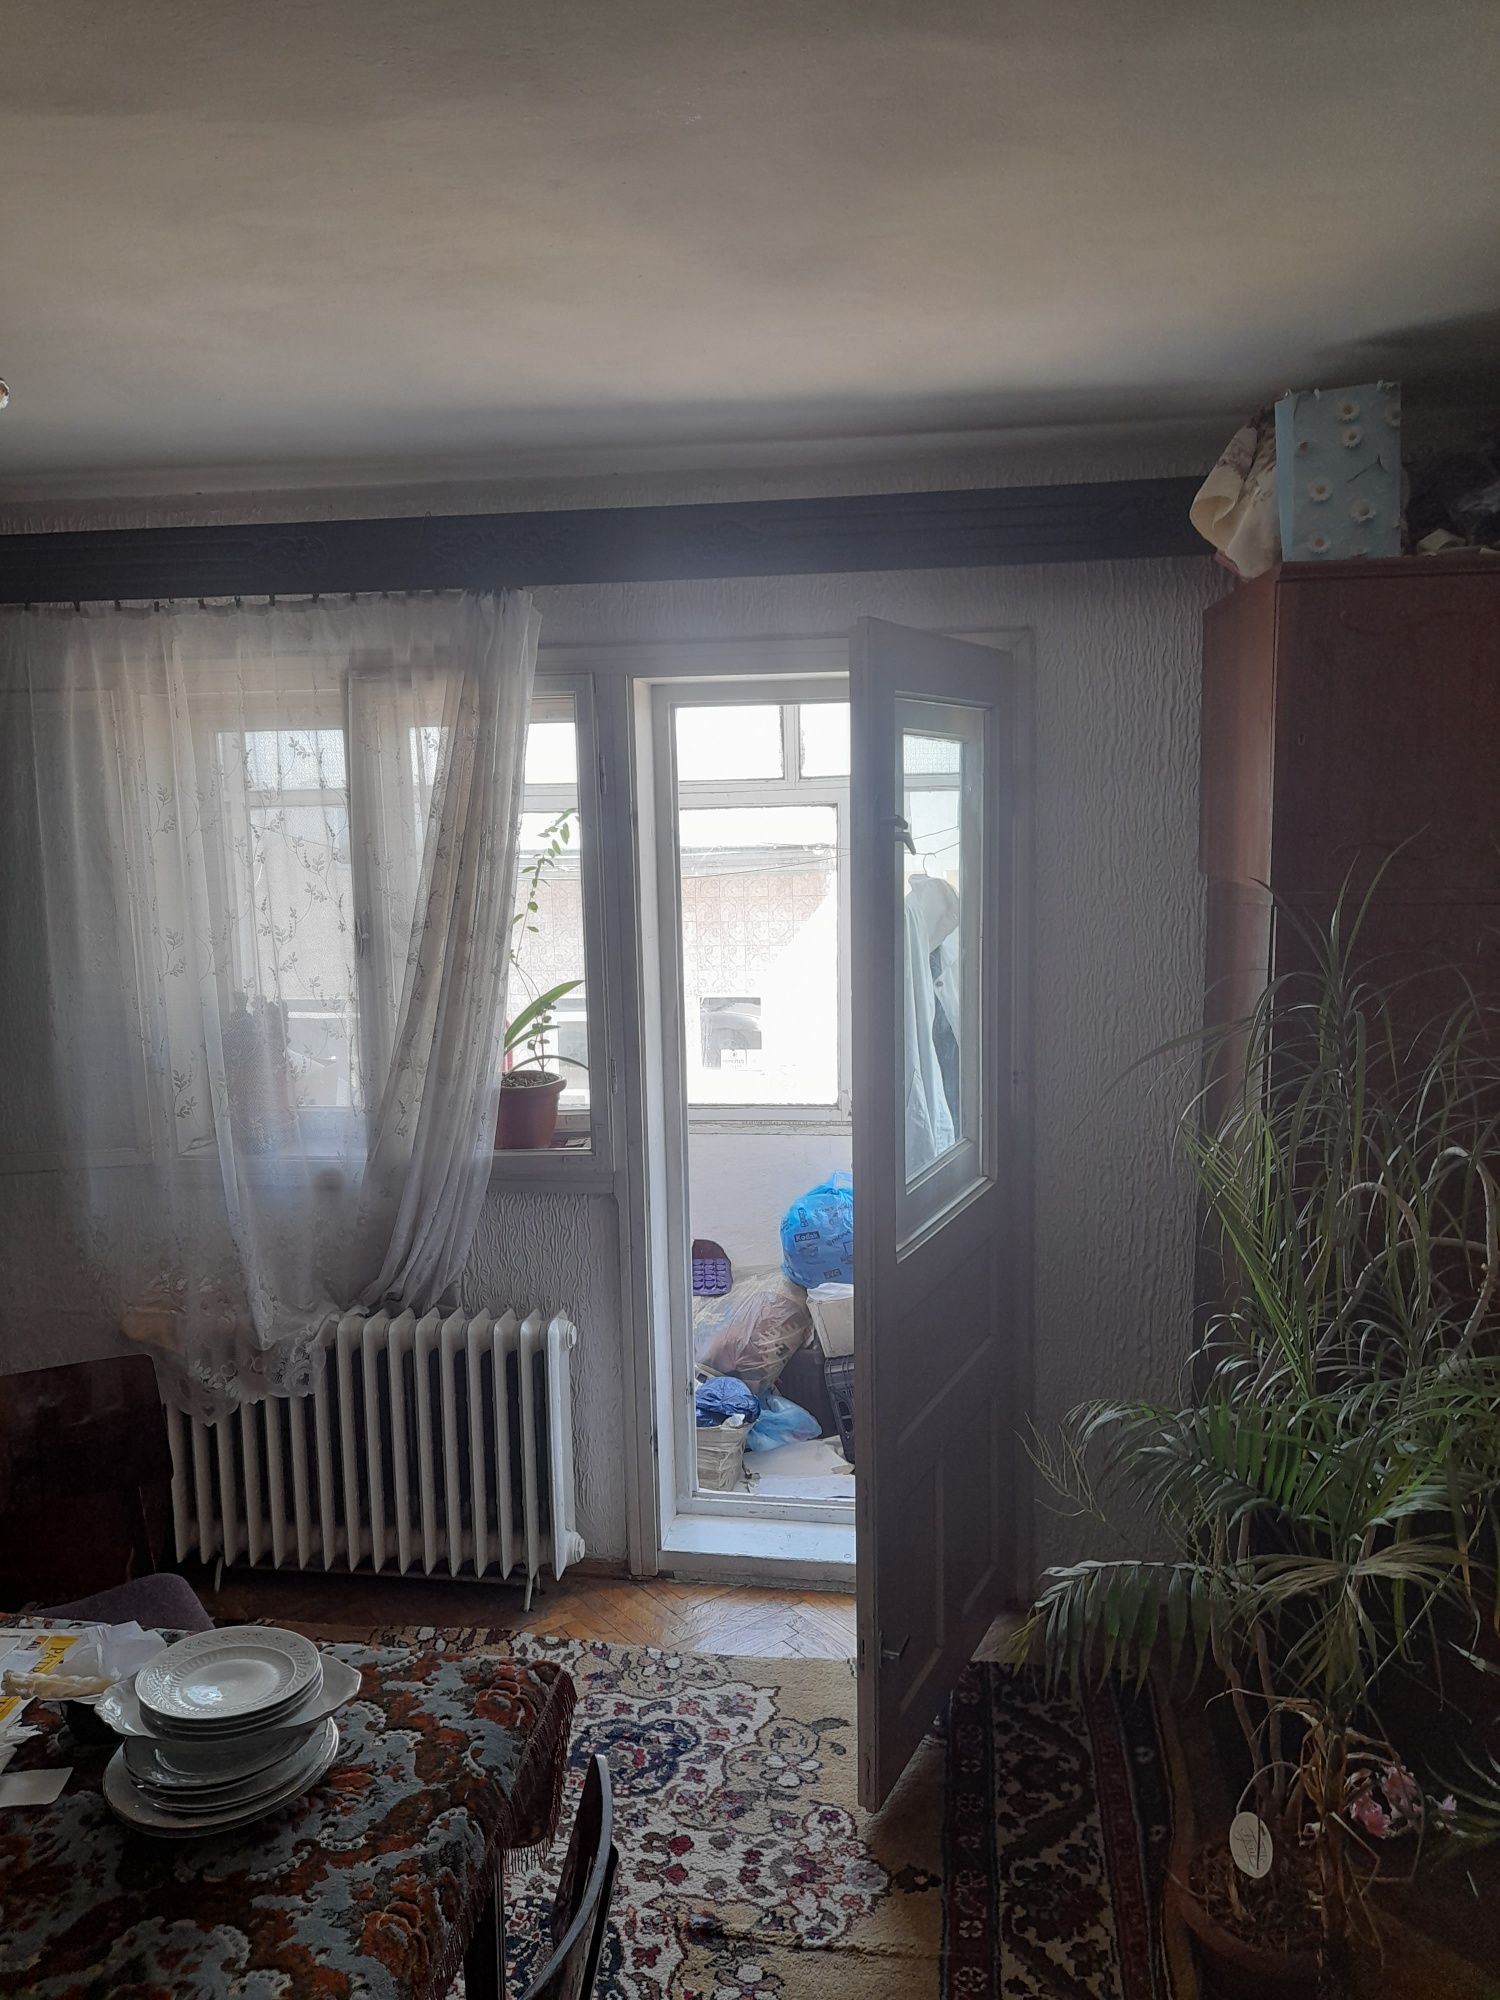 Apartament decomandat 3 camere zona George Enescu.